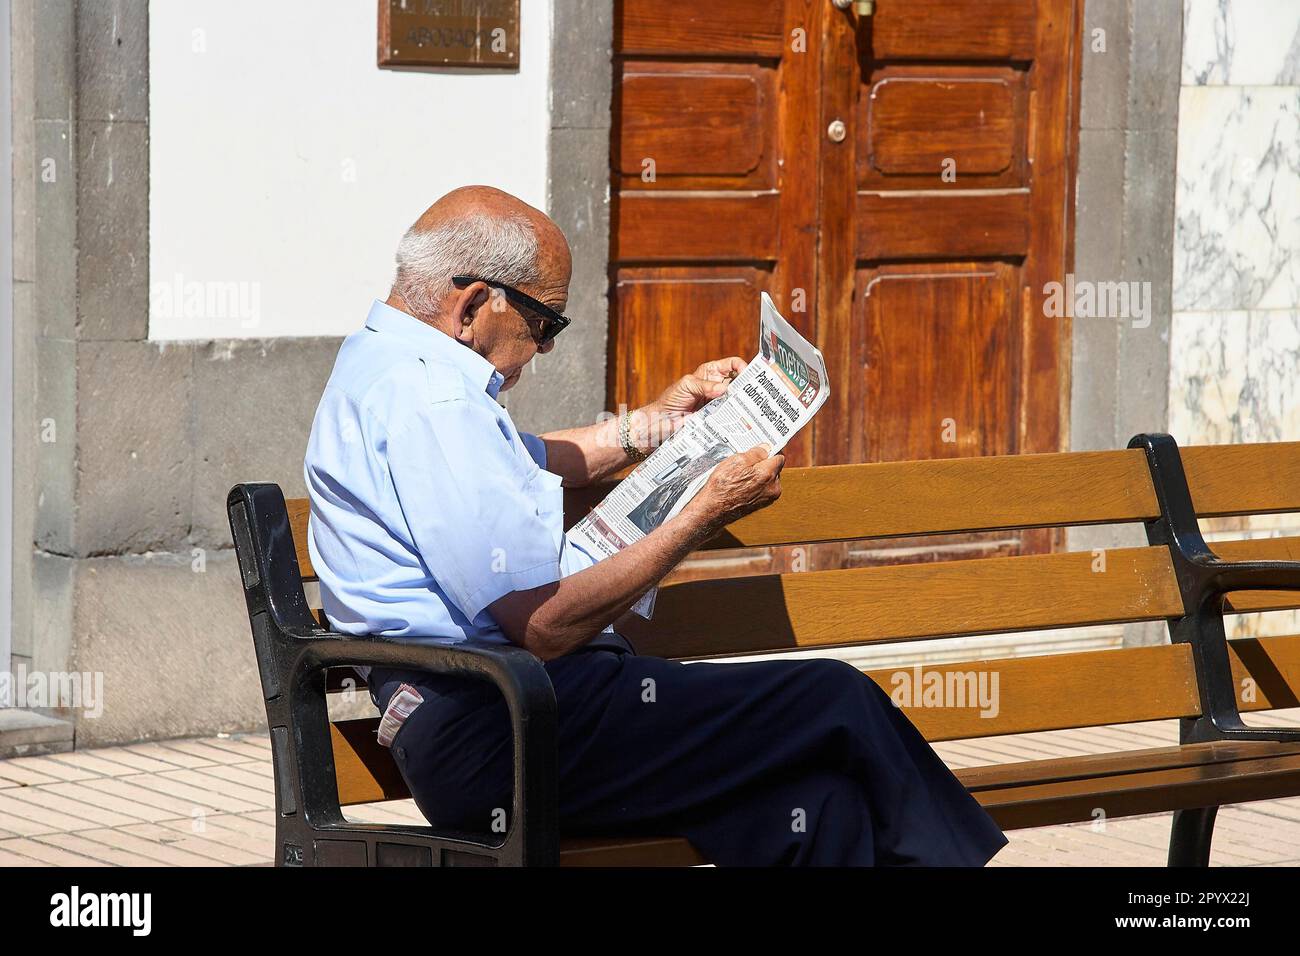 El hombre mayor con las gafas de sol se sienta en el banco del parque  leyendo el periódico, ciudad vieja, Vegueta, Las Palmas, capital, Gran  Canaria, Islas Canarias, España Fotografía de stock -